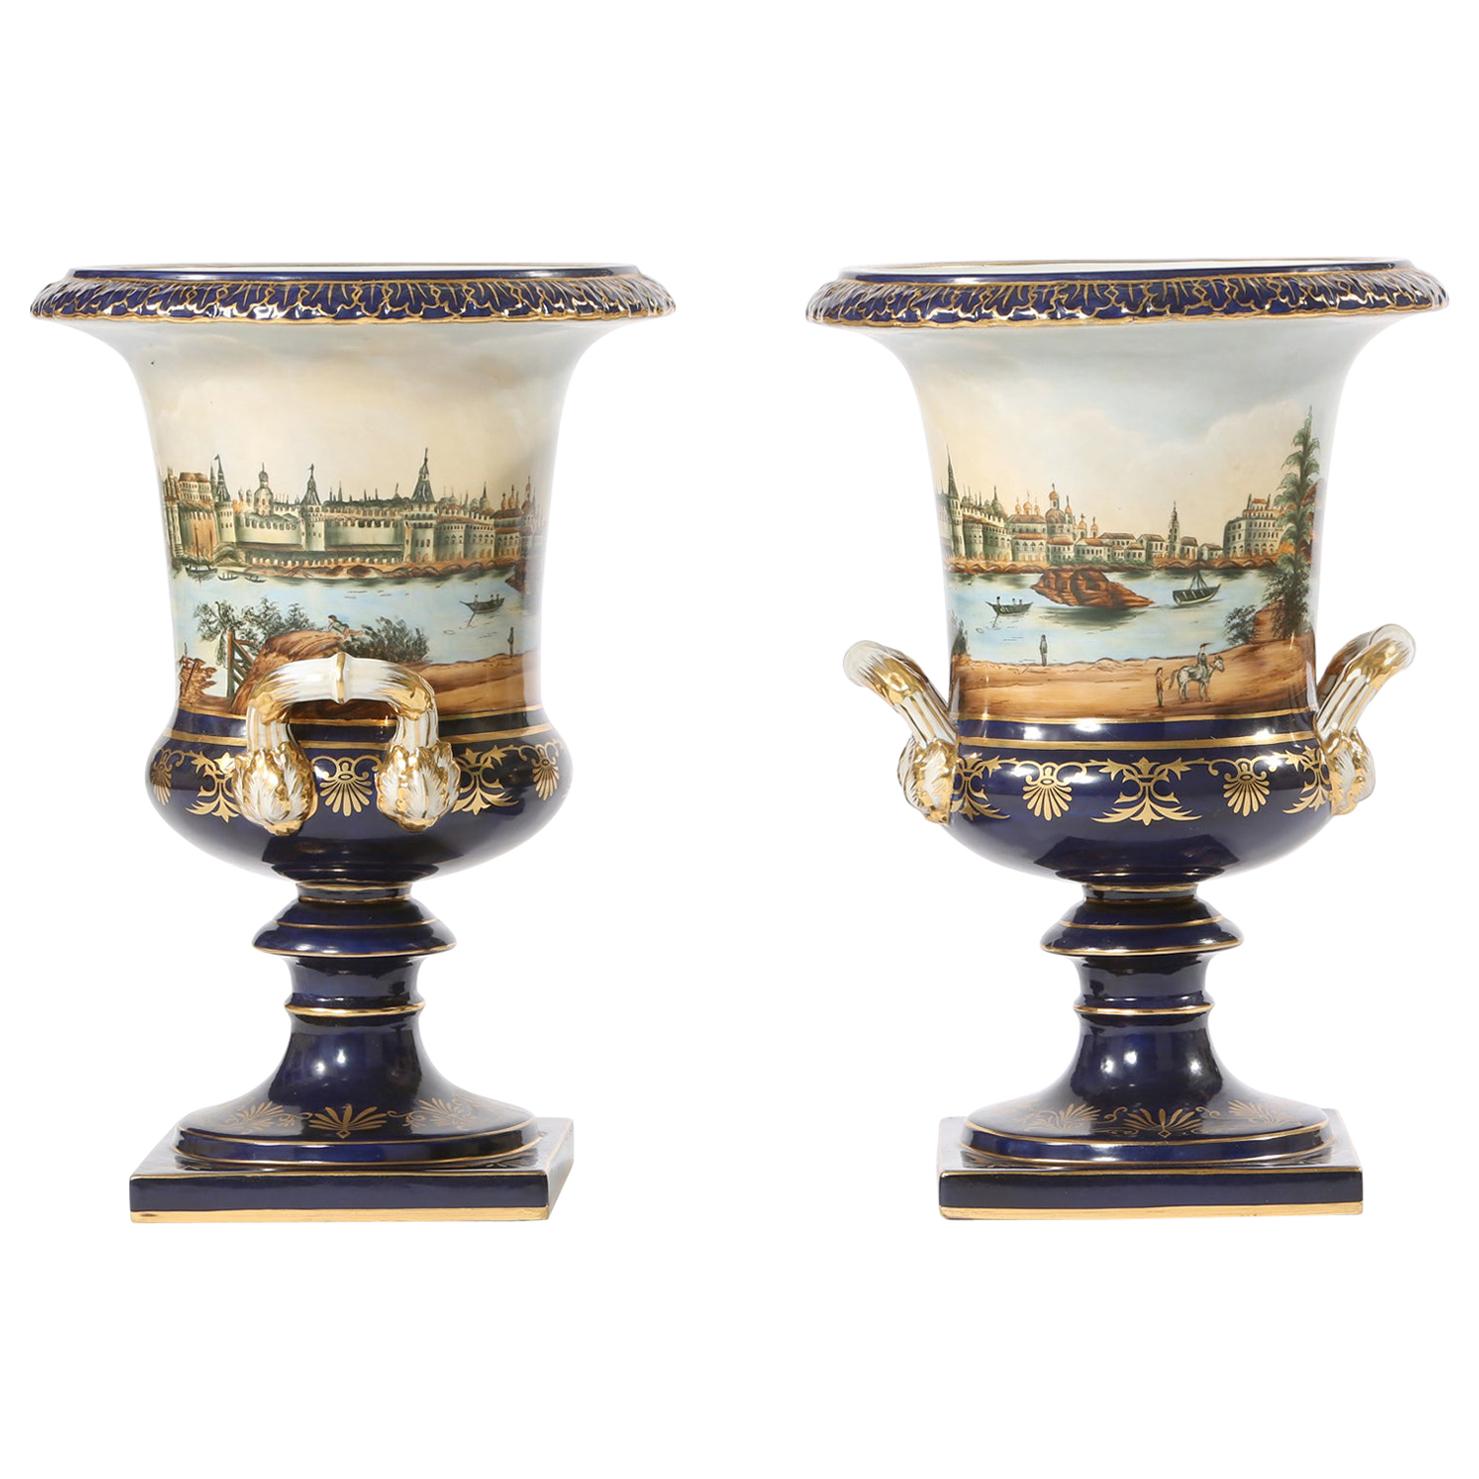 Paar Porzellanurnen/Vasen in Campana-Form aus dem frühen 20. Jahrhundert